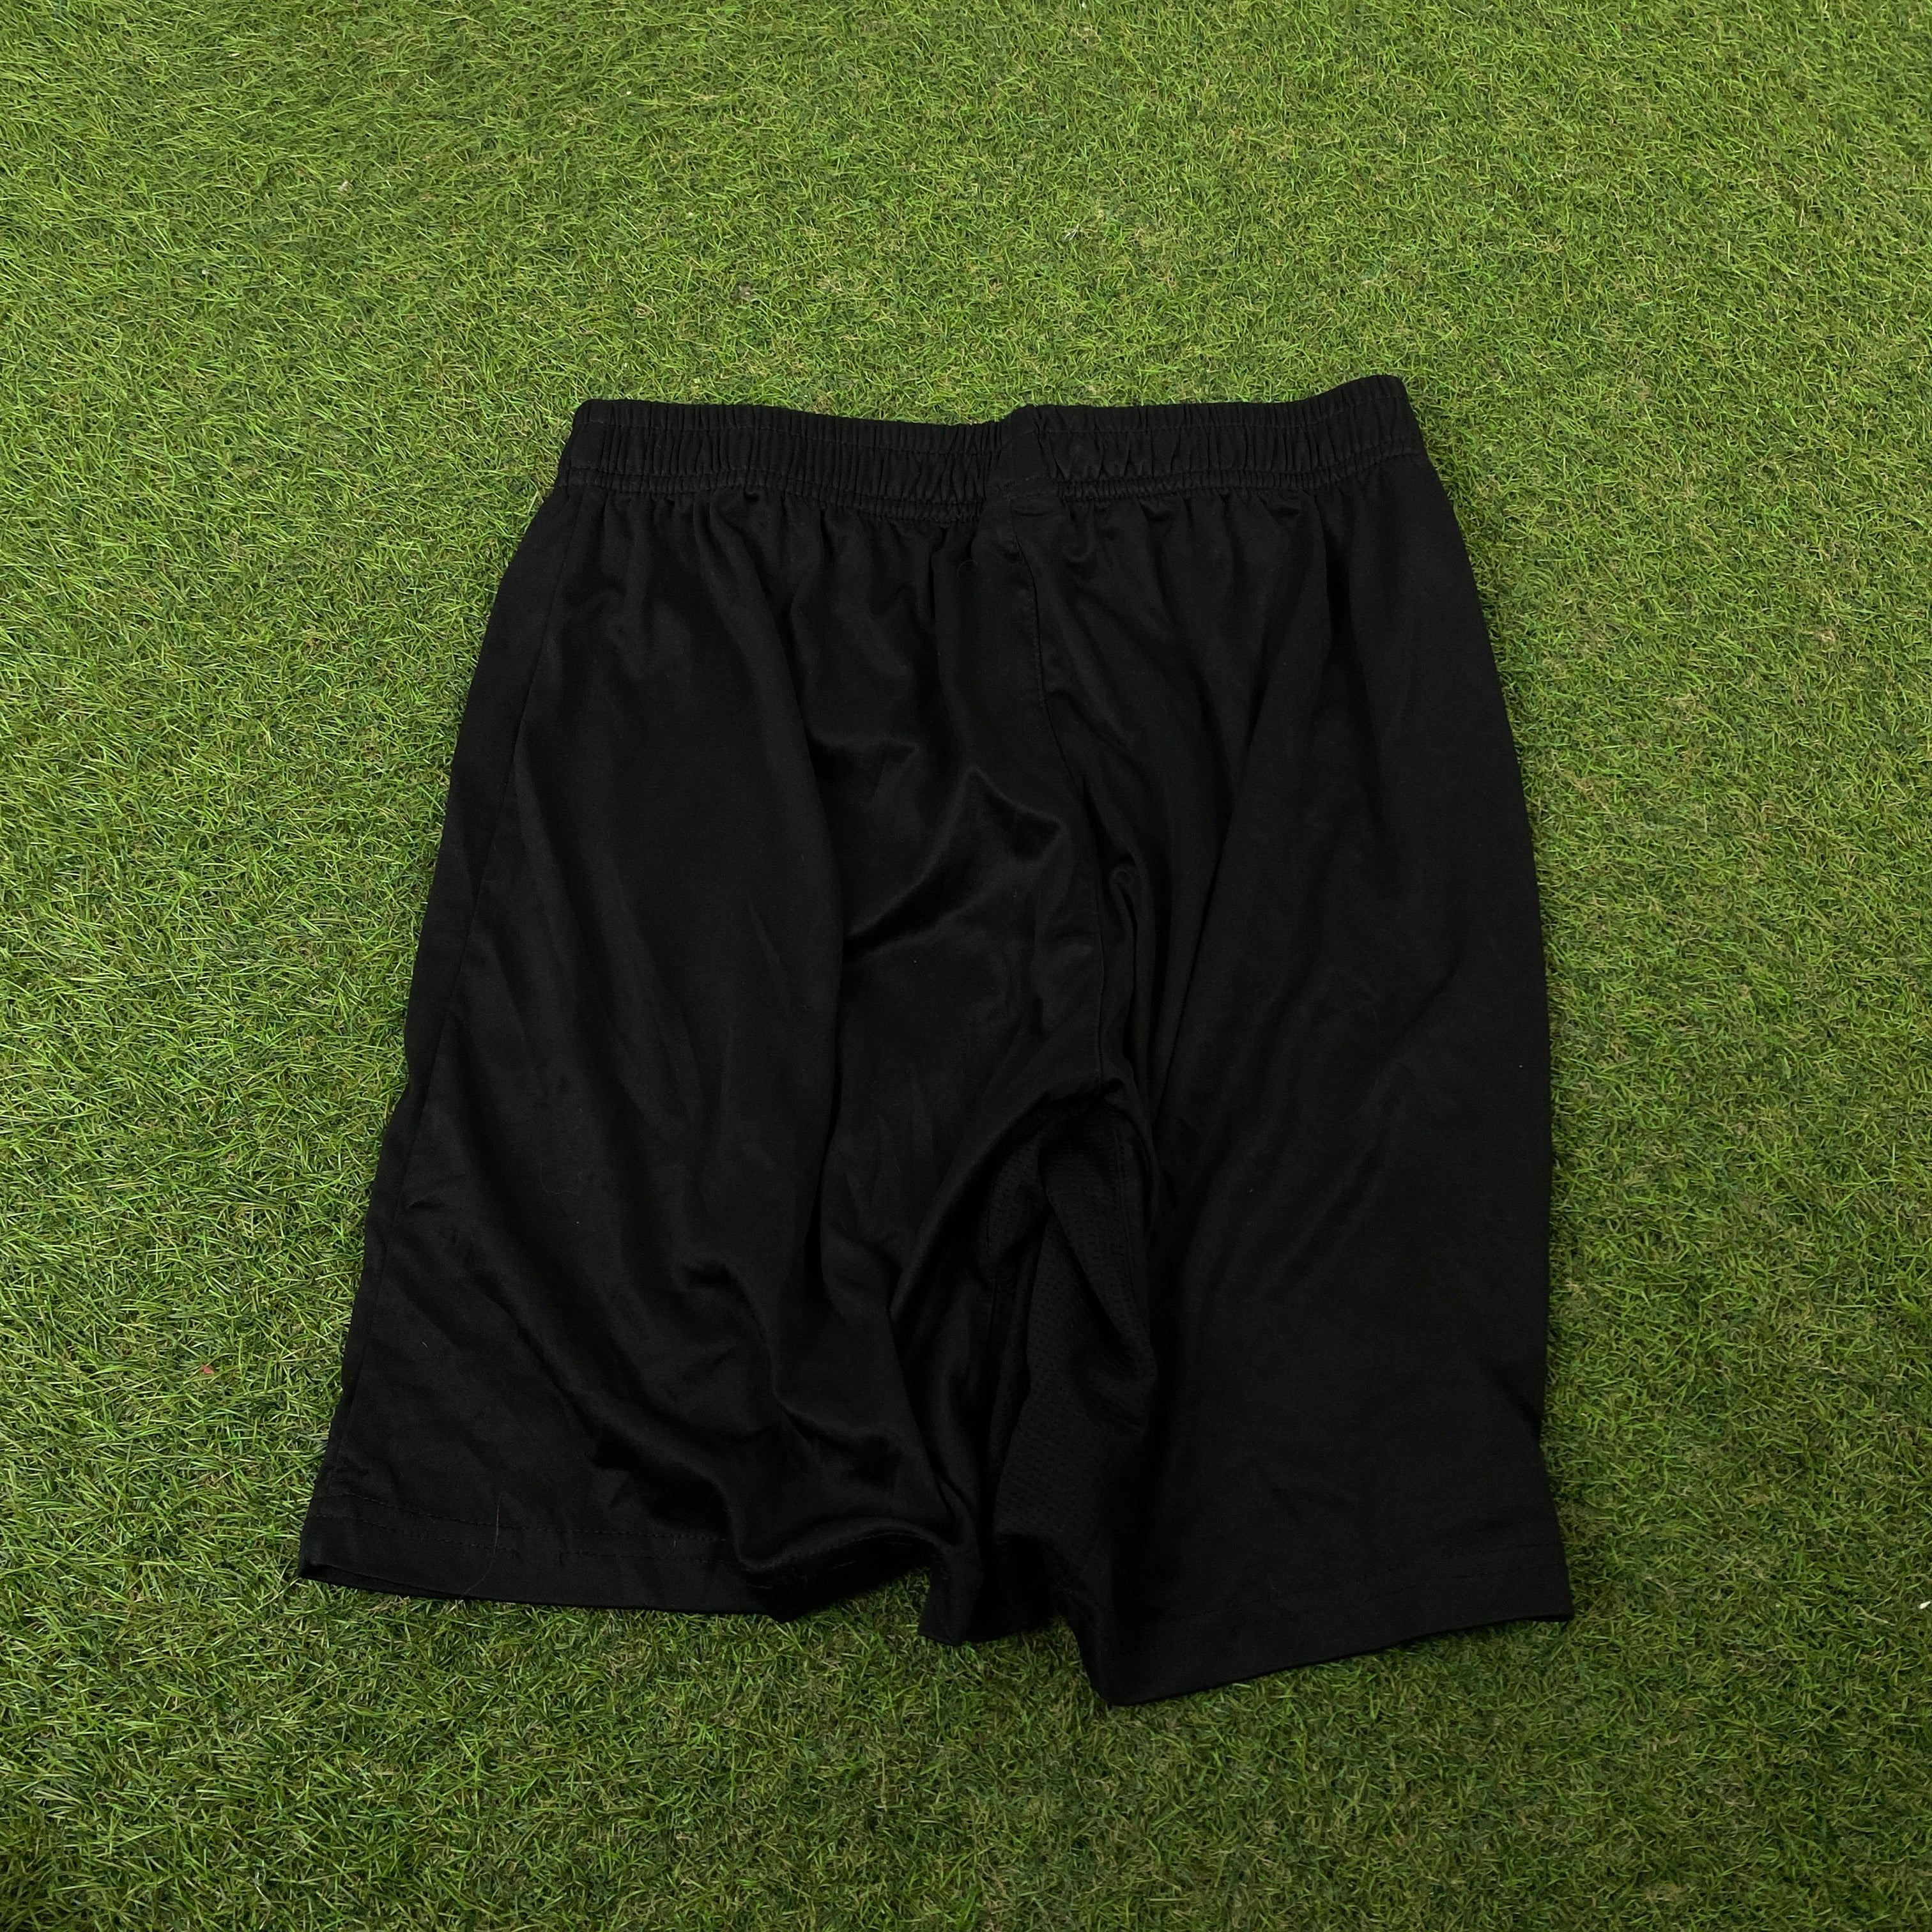 Retro Nylon Football Shorts Black Small